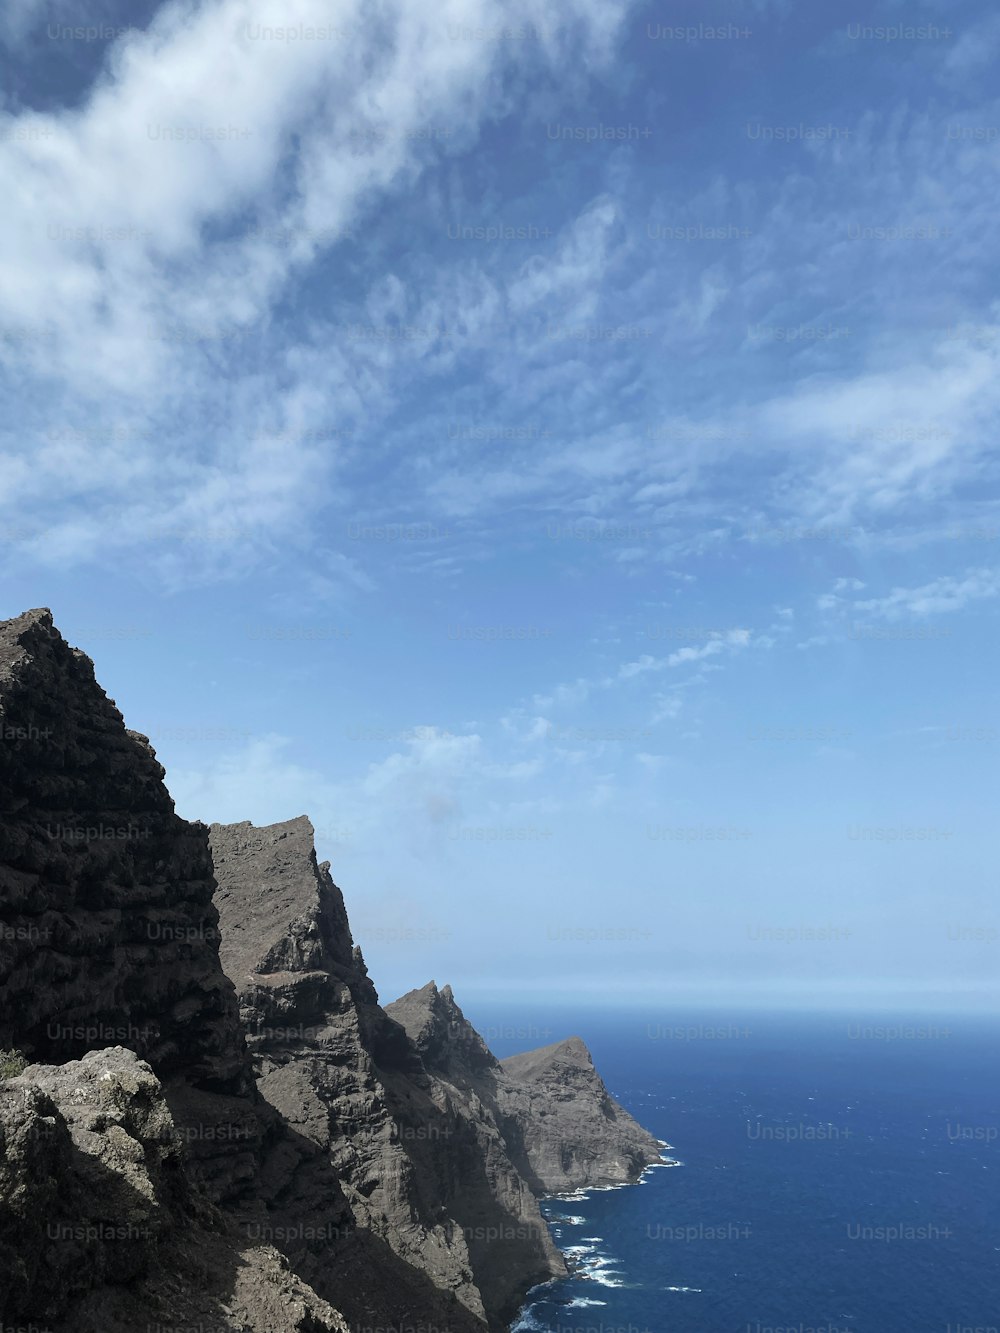 Un homme debout au sommet d’une montagne au bord de l’océan